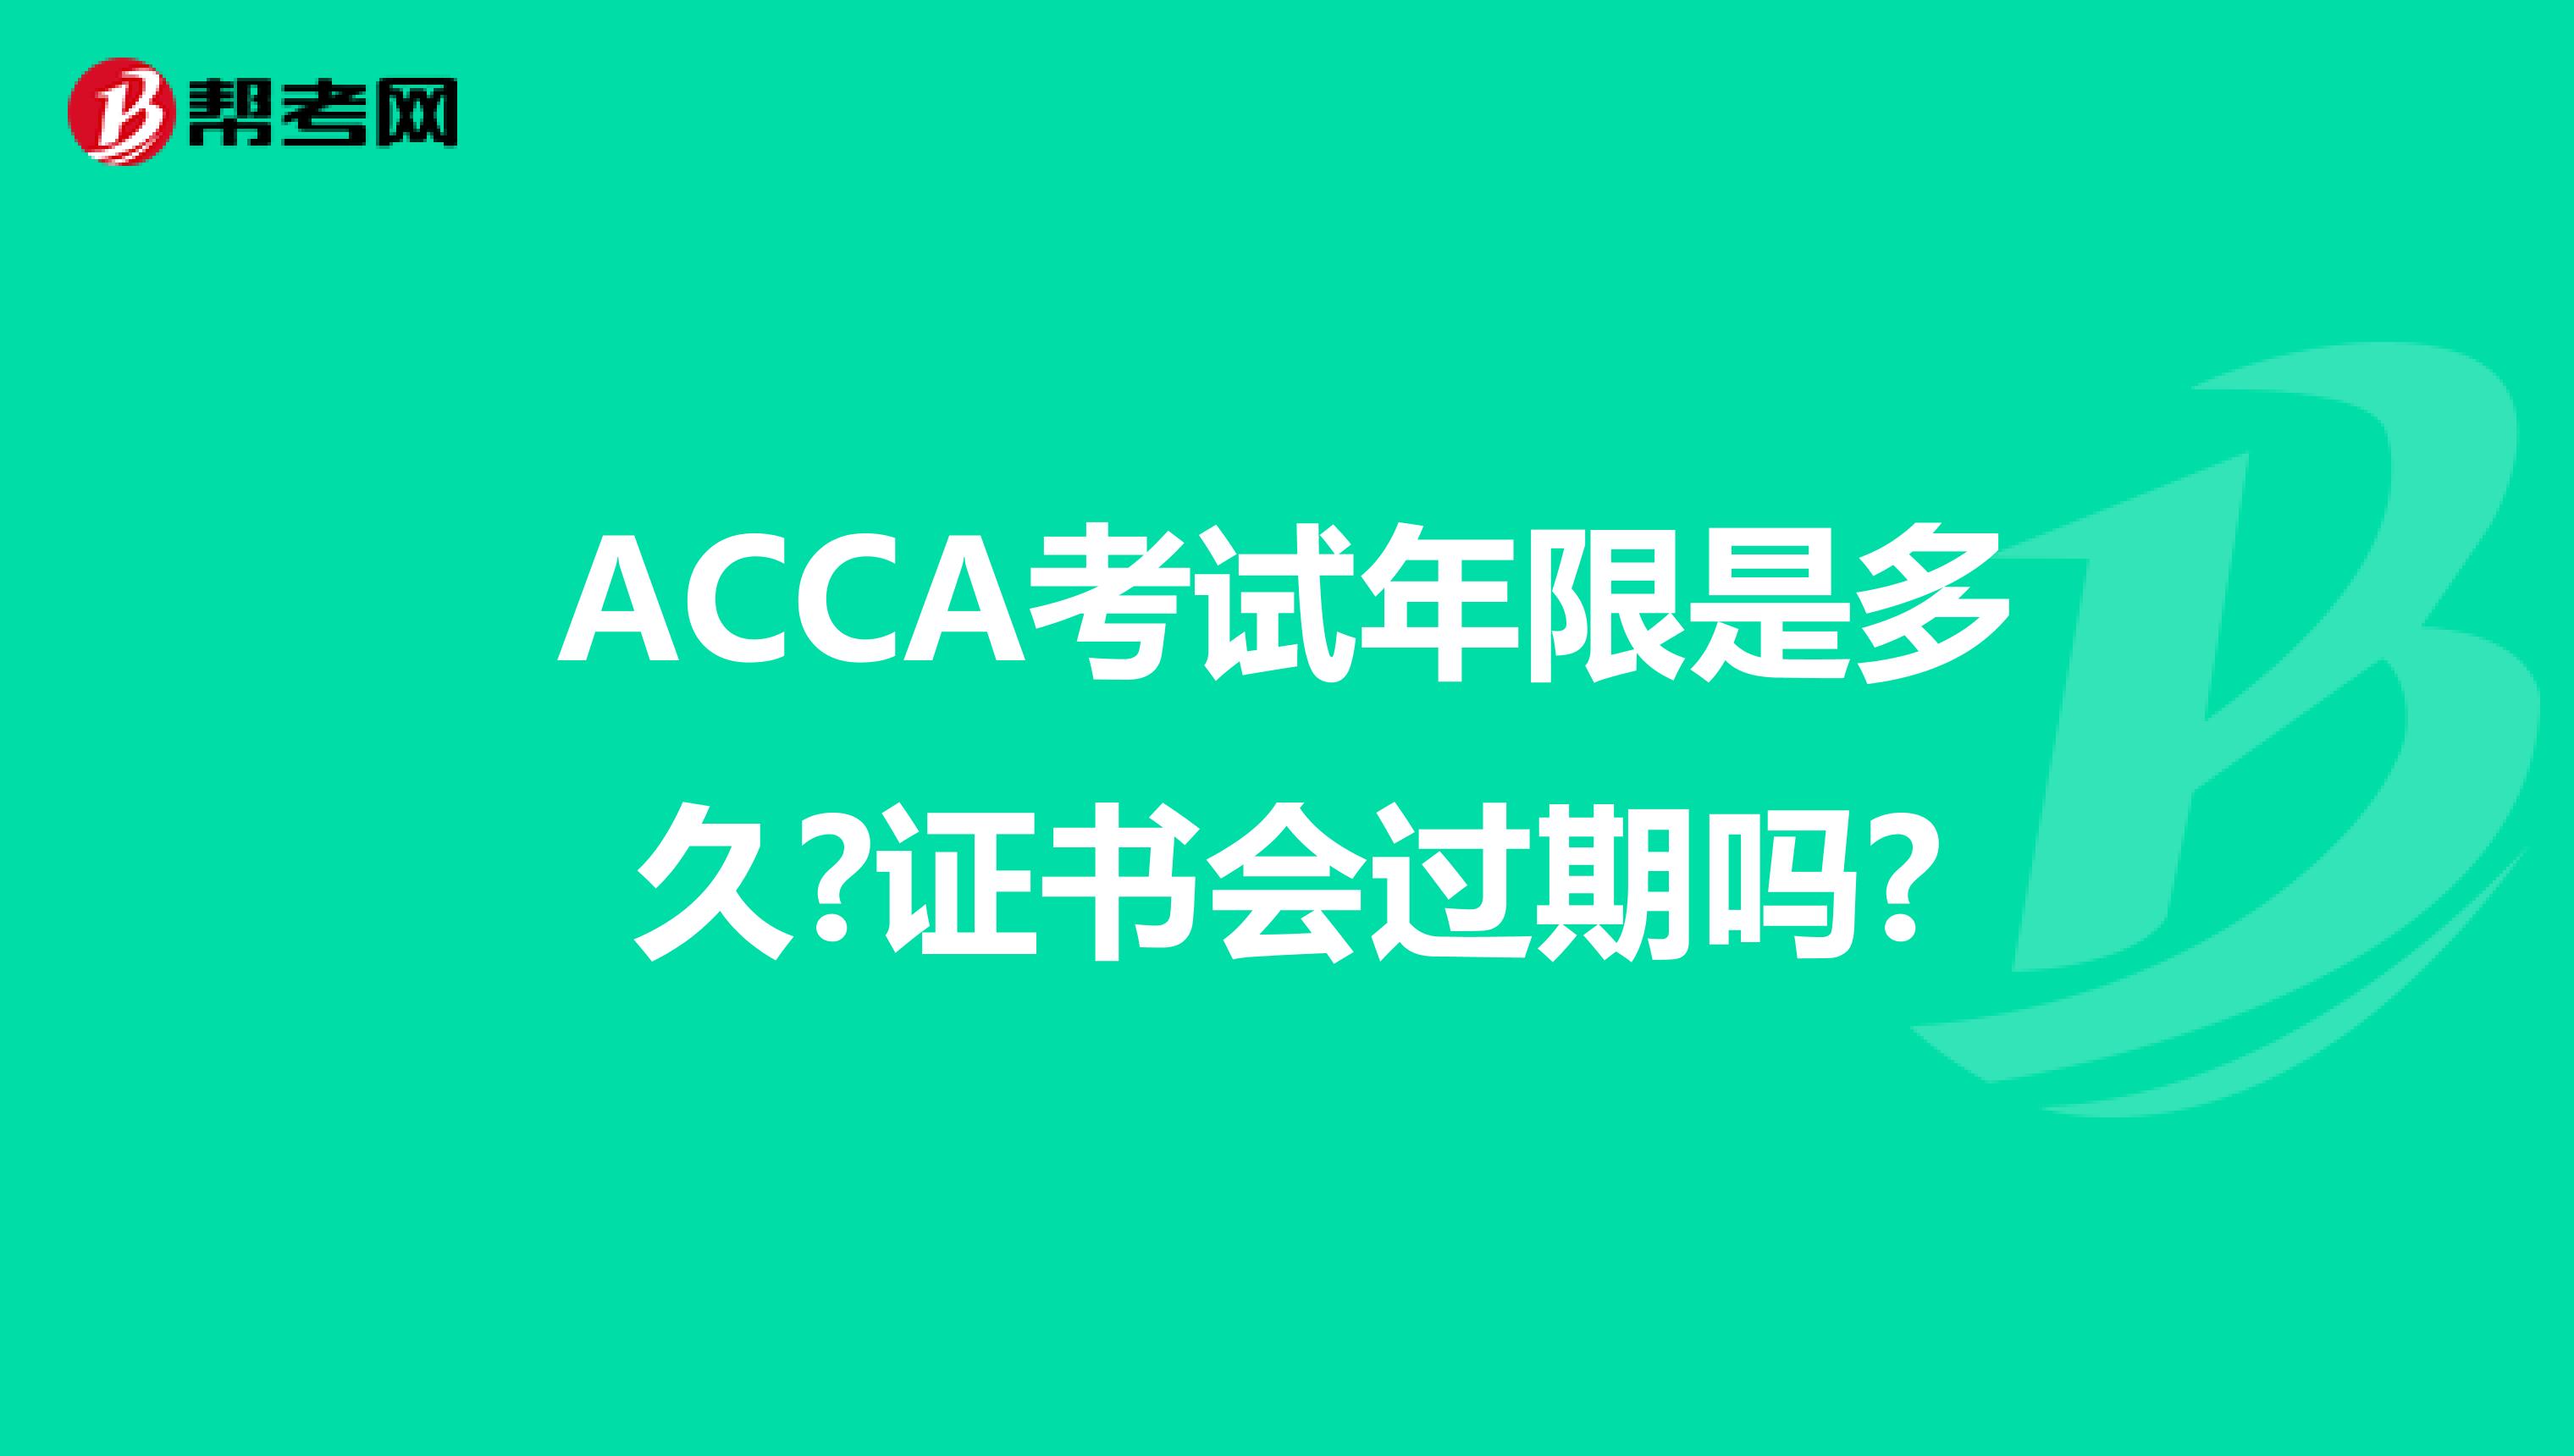 ACCA考试年限是多久?证书会过期吗?